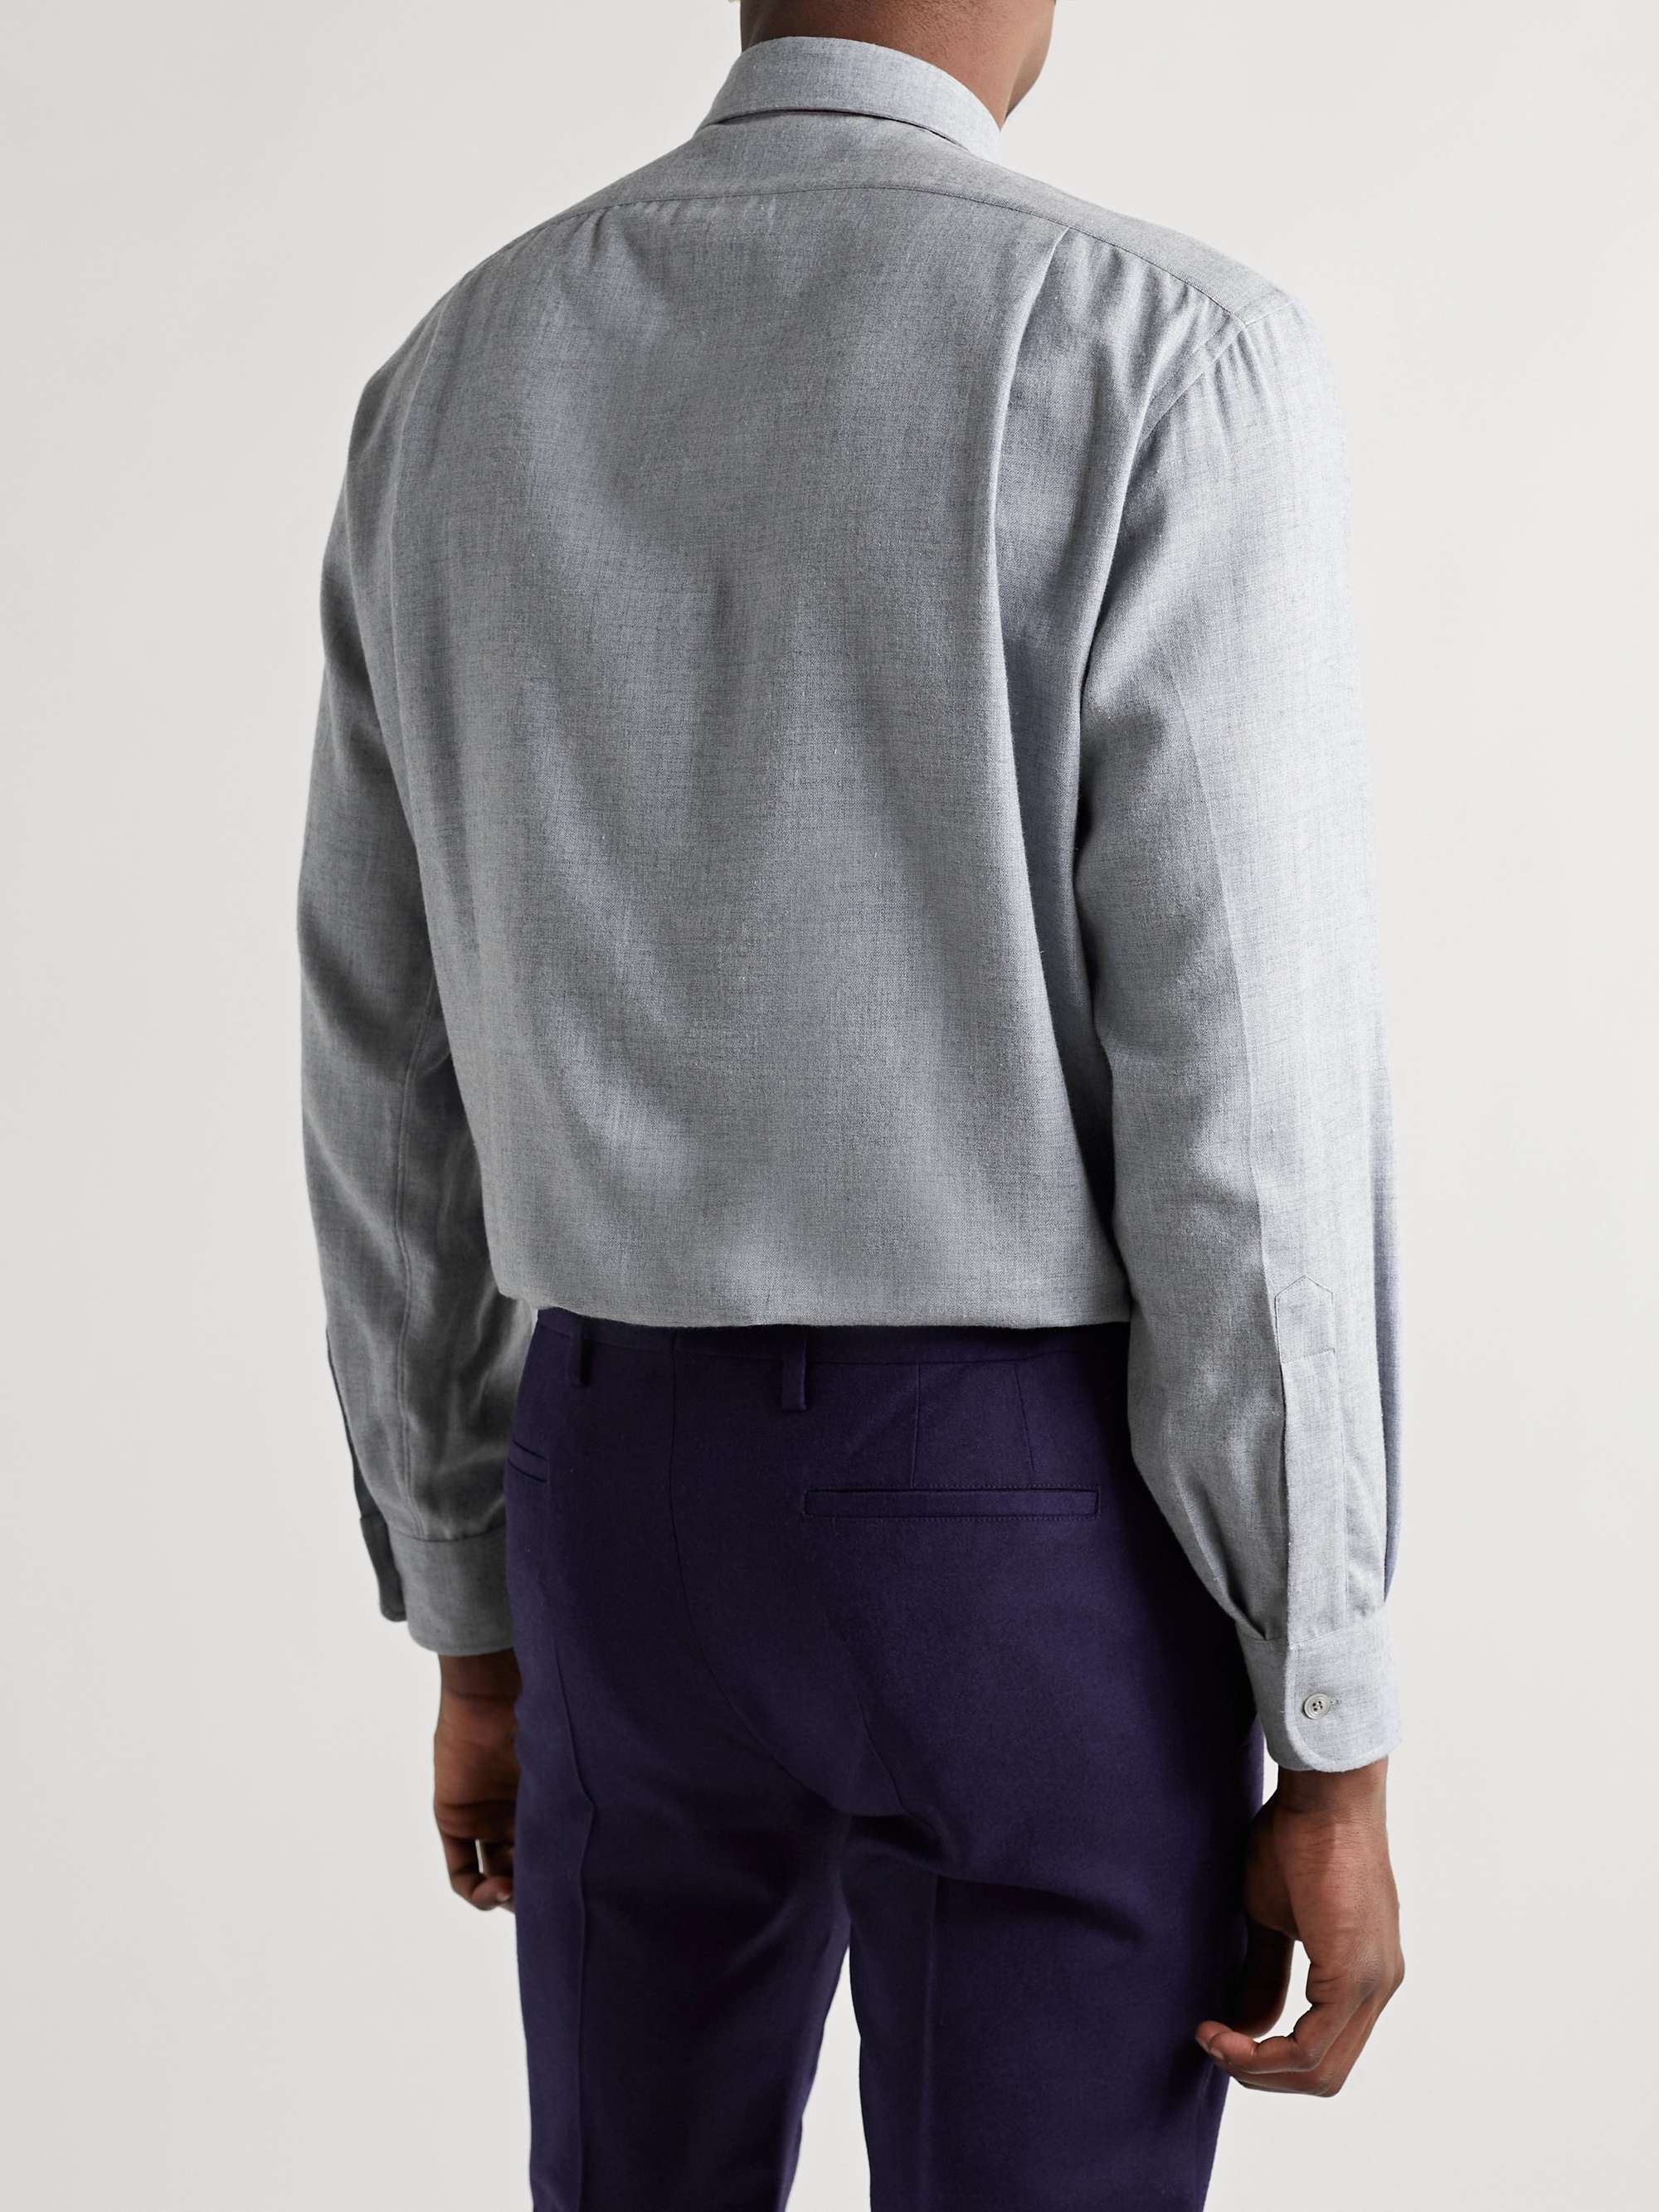 CHARVET Cotton and Wool-Blend Shirt